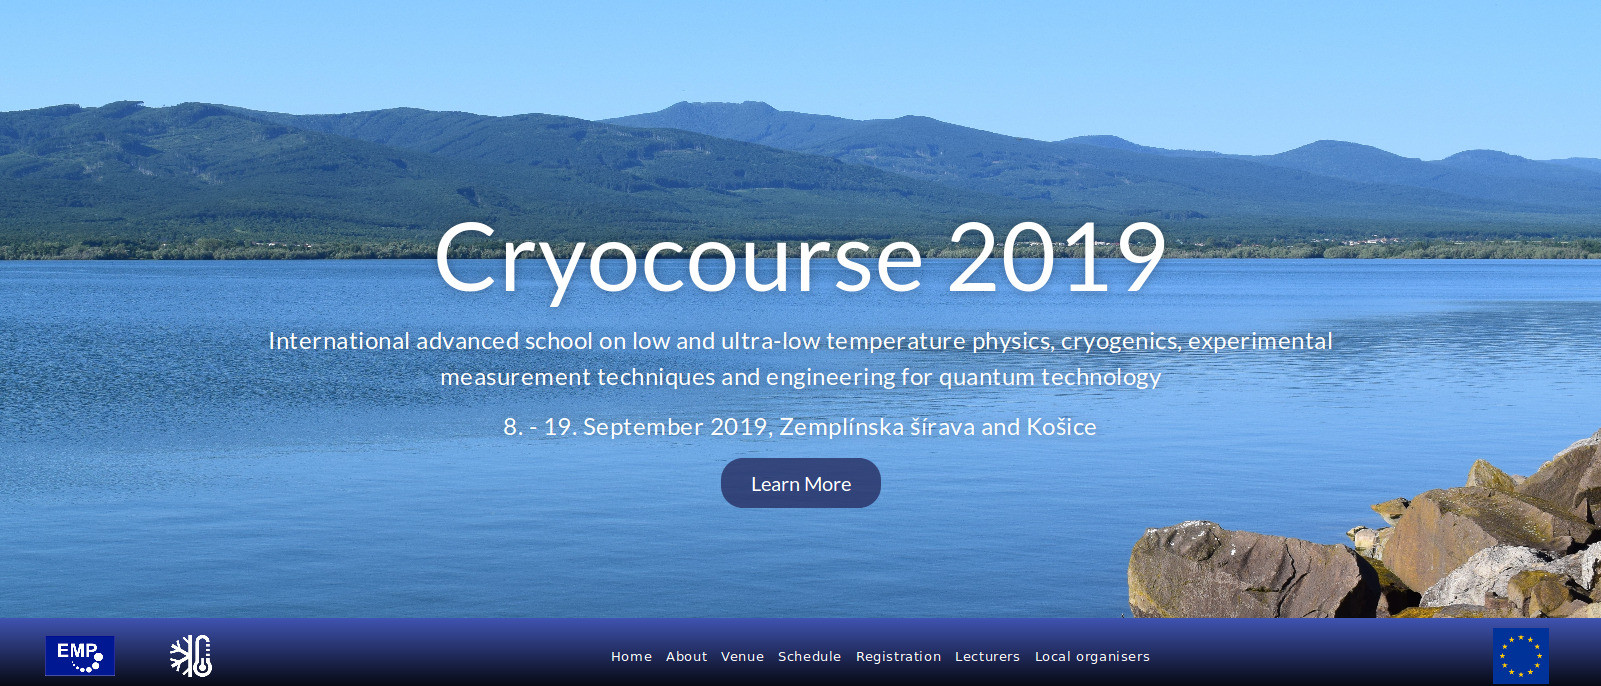 Cryocourse 2019